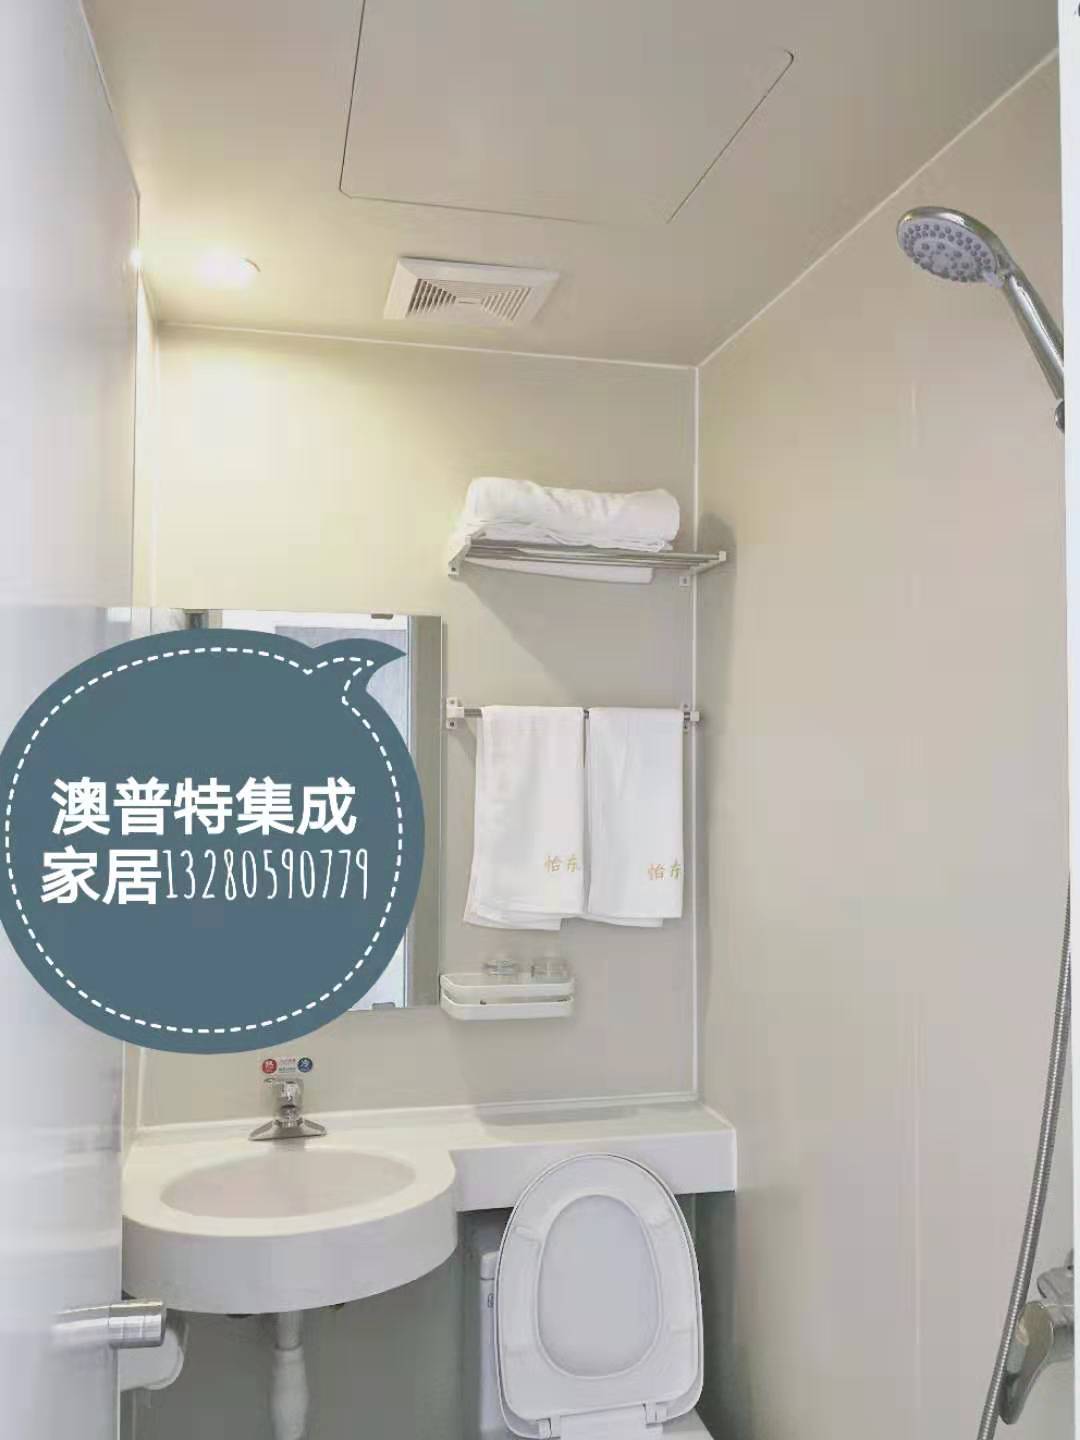 一体式整体卫生间 集式卫生间 临沂澳普特集成家居 日式整体浴室房 生产厂家